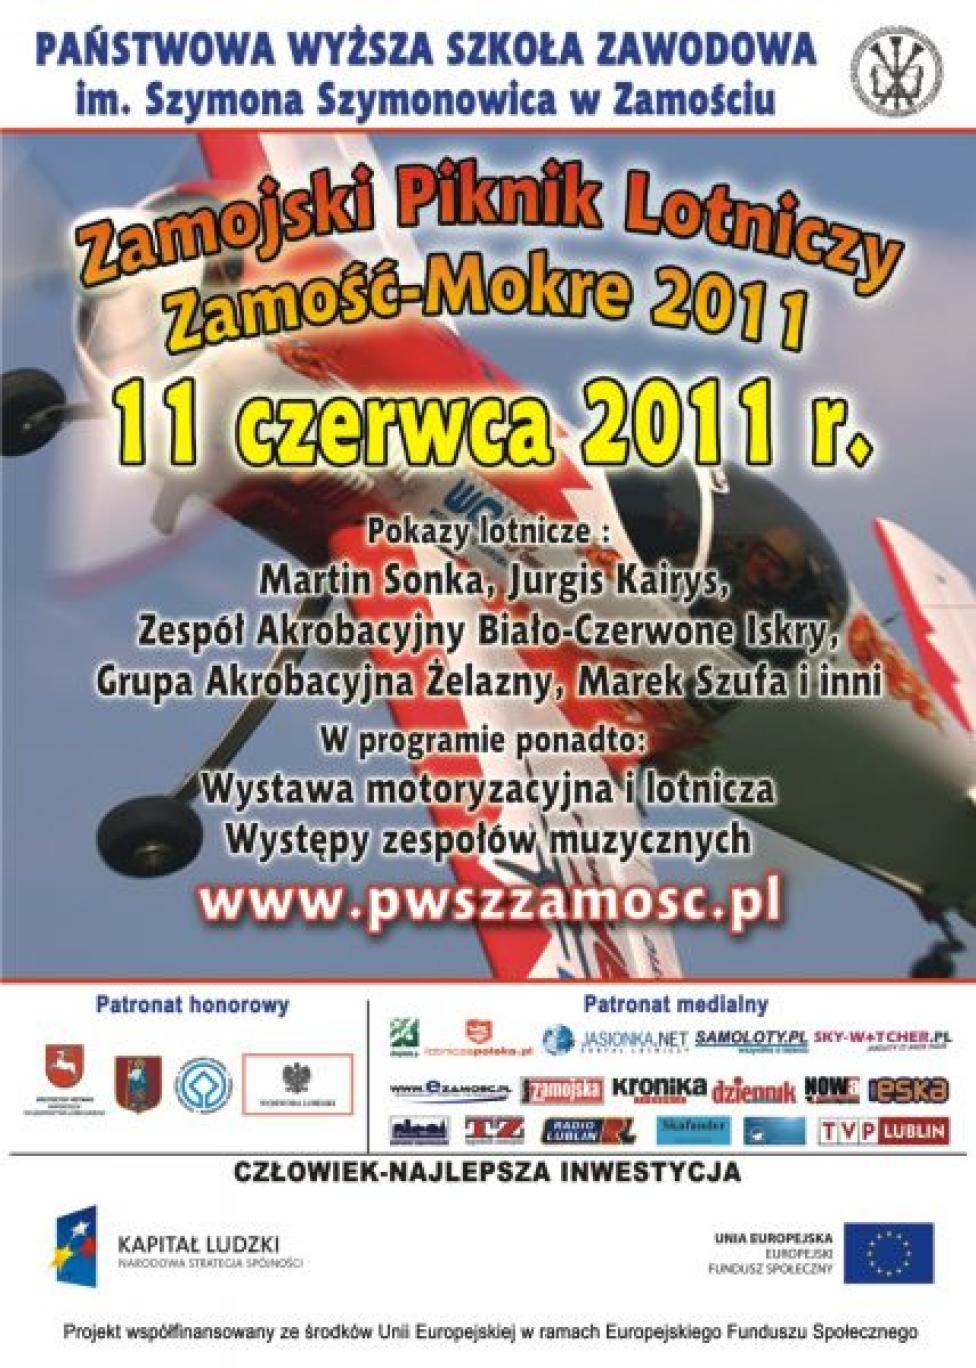 Zamojski Piknik Lotniczy Zamość - Mokre 2011 (plakat)